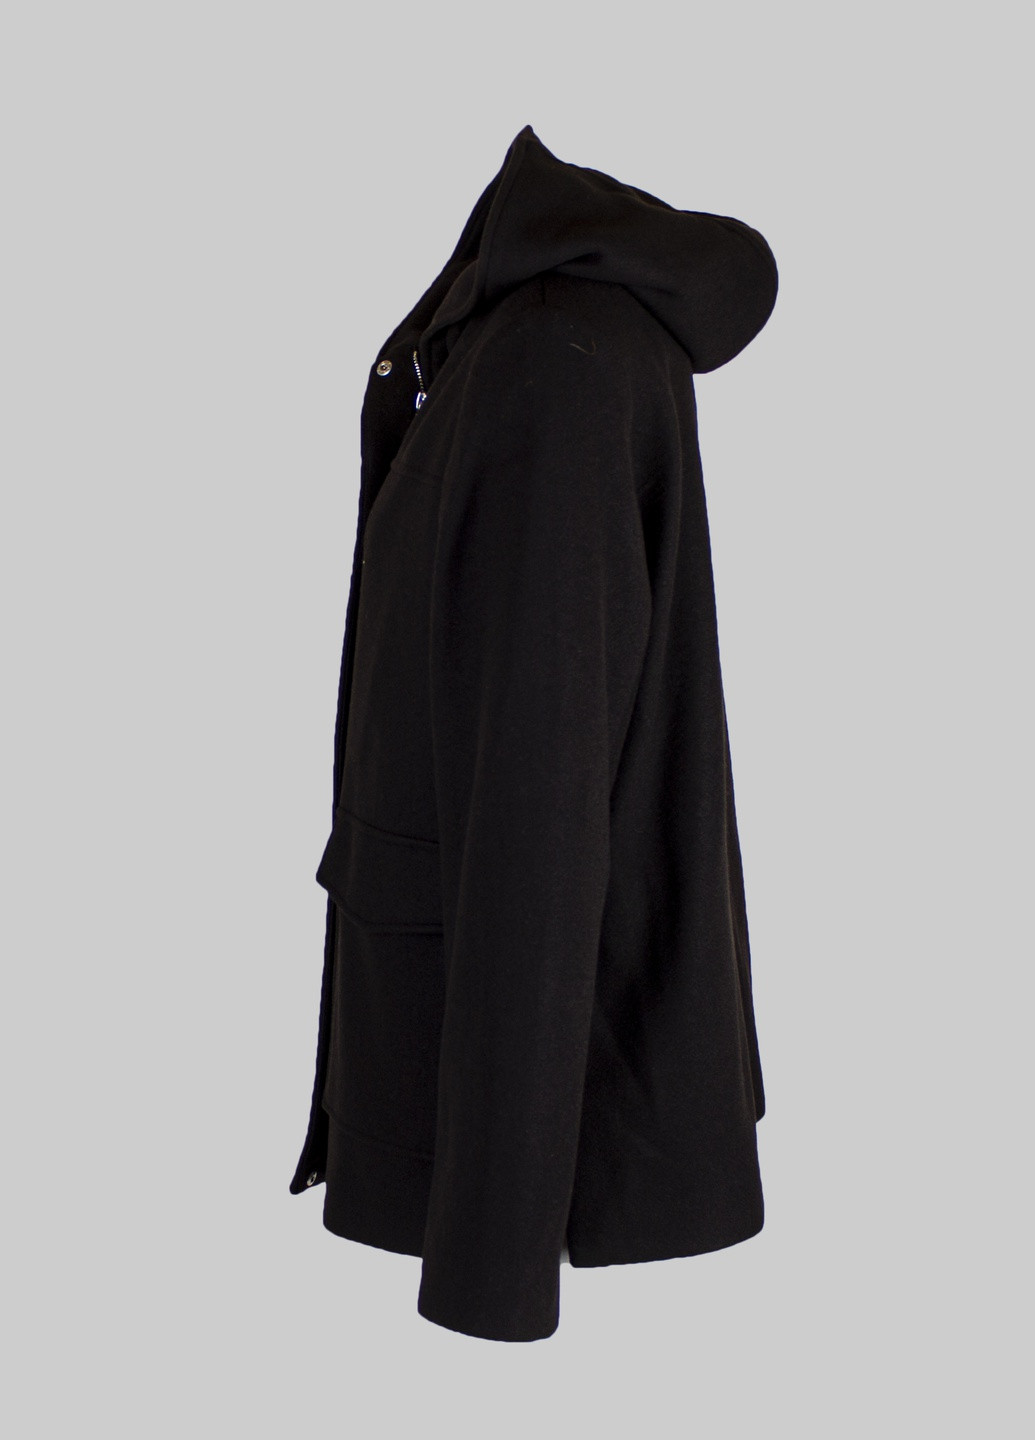 Черное демисезонное Пальто Primark